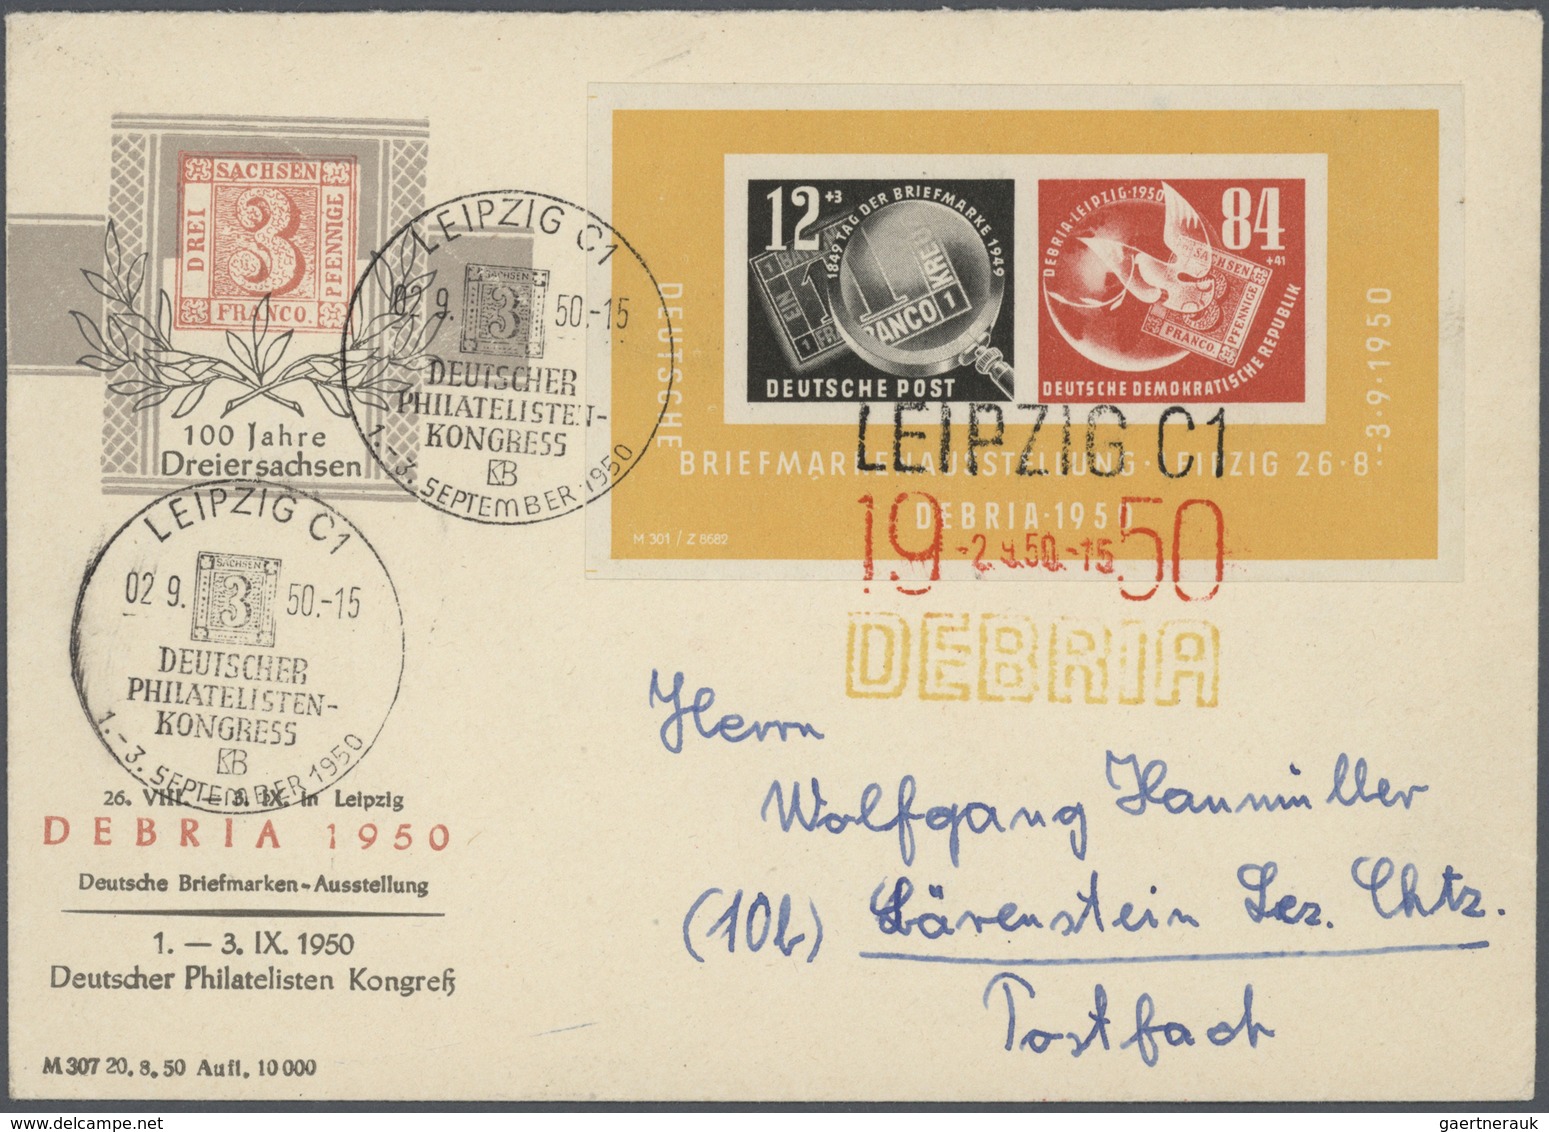 32328 DDR: 1949/90 ca., DDR-Kiste mit Lagerbuch postfrisch und gestempelt nur der Anfangsjahre, viel Bogen